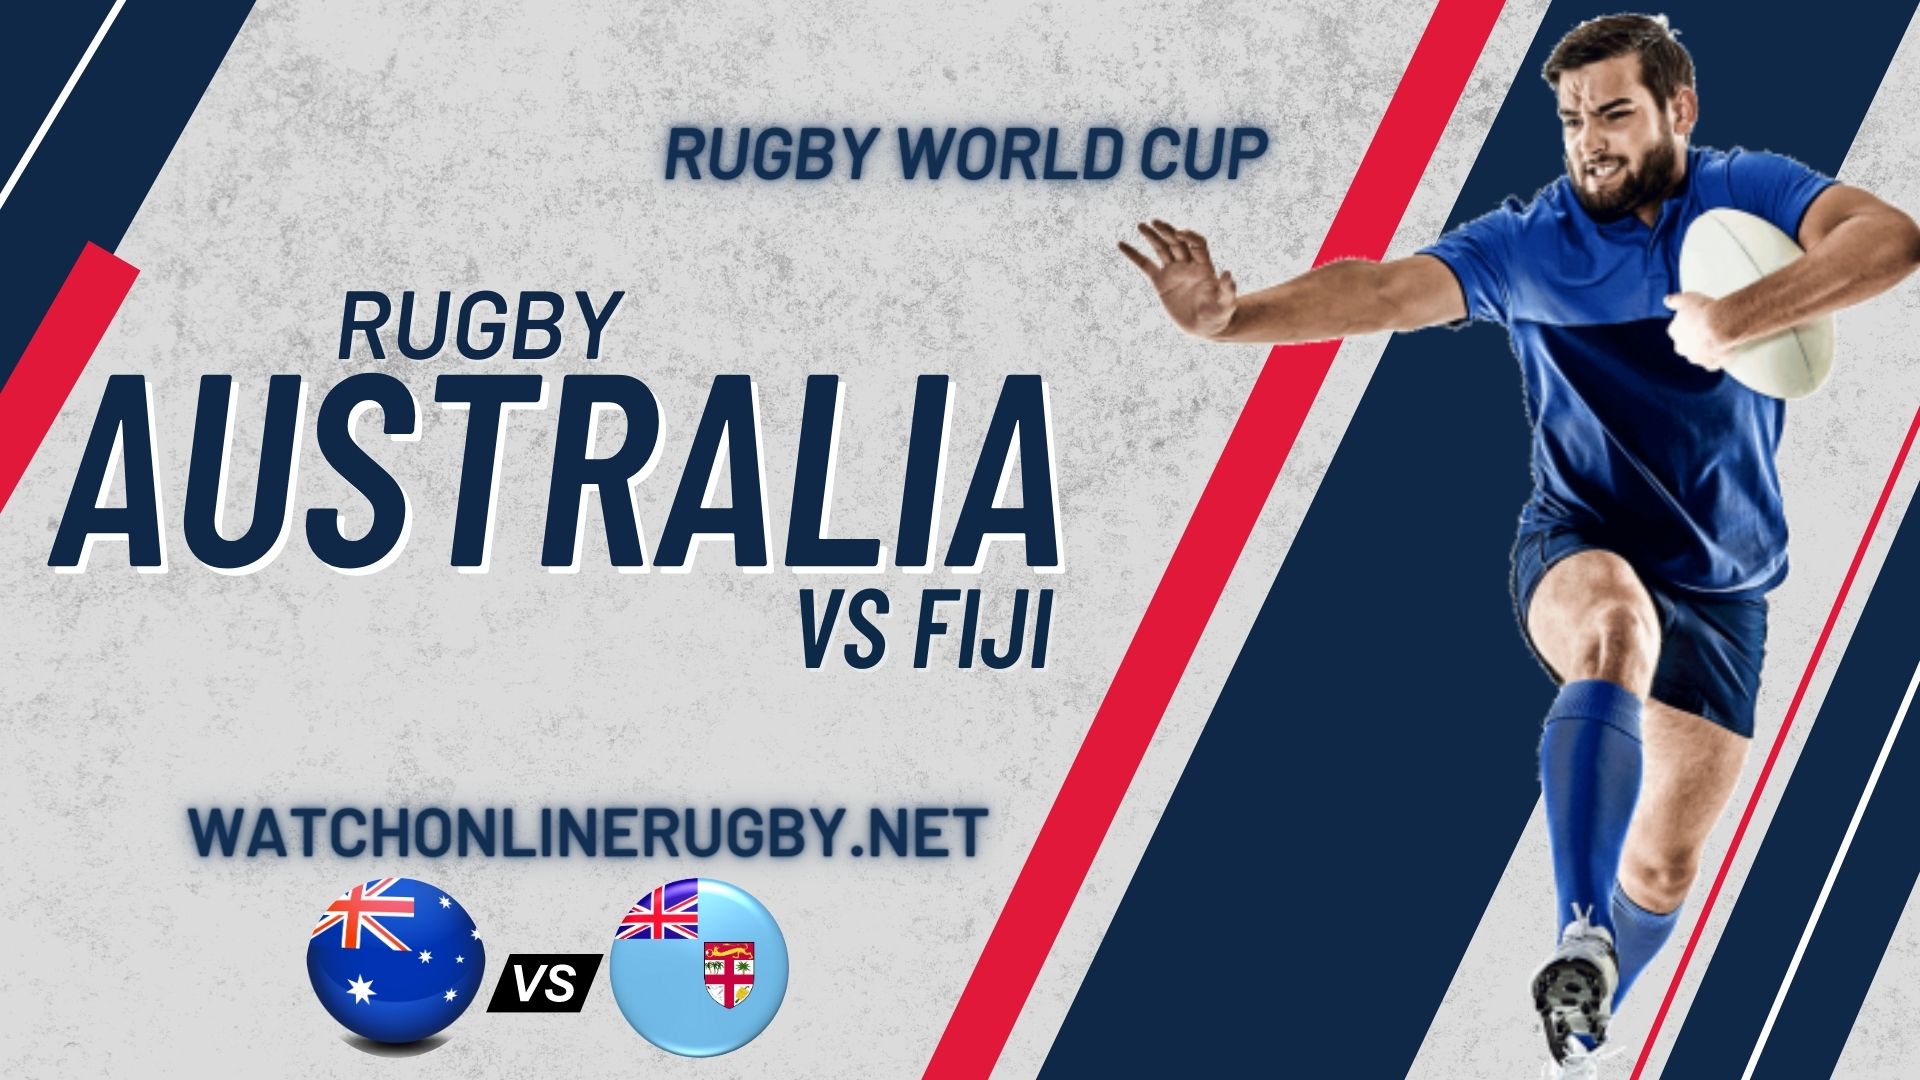 RWC 2019 Wallabies VS Fiji Live Stream